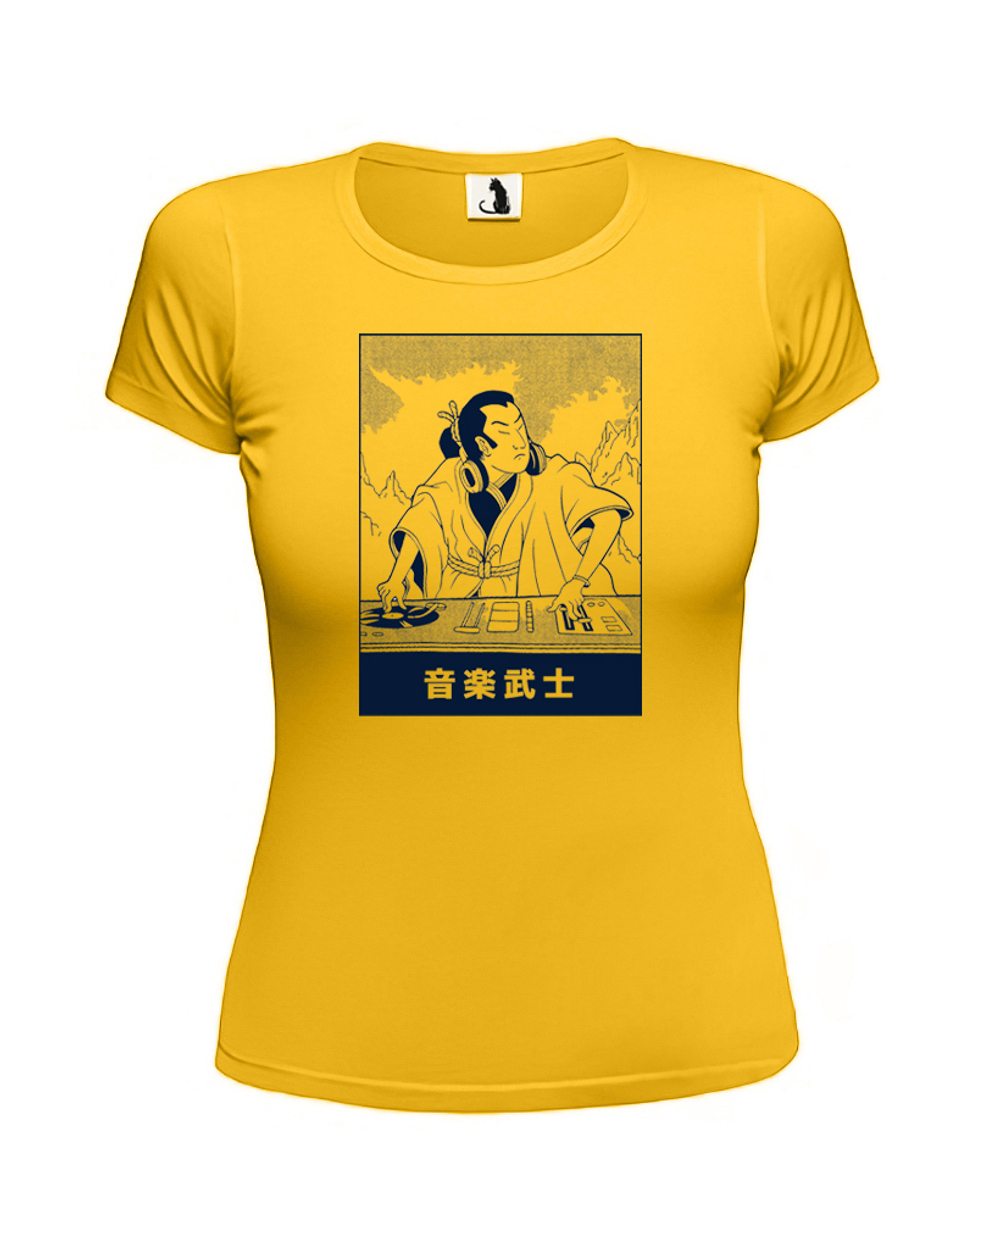 Футболка Диджей-самурай женская приталенная желтая с синим рисунком